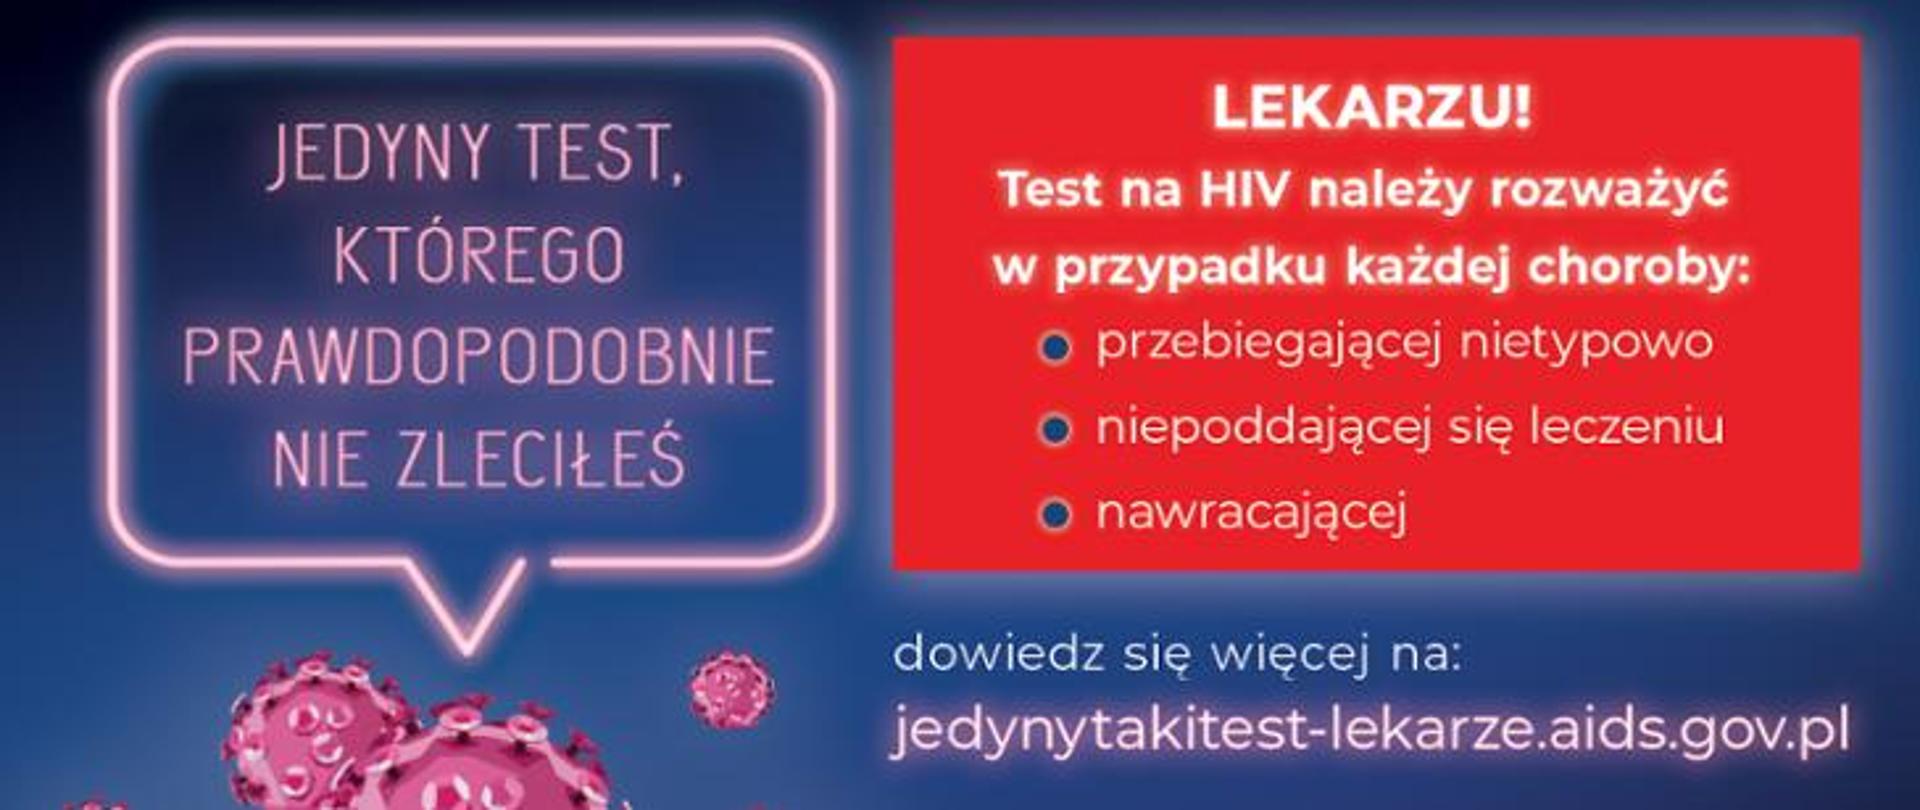 Na granatowym tle z lewej strony tekst w różowej ramce: ,,JEDYNY TEST KTÓREGO PRAWDOPODOBNIE NIE ZLECIŁEŚ". Z prawej strony na czerwonym tle napis: ,,LEKARZU: Test na HIV należy rozważyć w przypadku każdej choroby:
przebiegającej nietypowo
niepoddającej się leczeniu
nawracającej
Pod spodem na granatowym tle napis: dowiedz się więcej na:
jedynytakitest-lekarze.aids.gov.pl